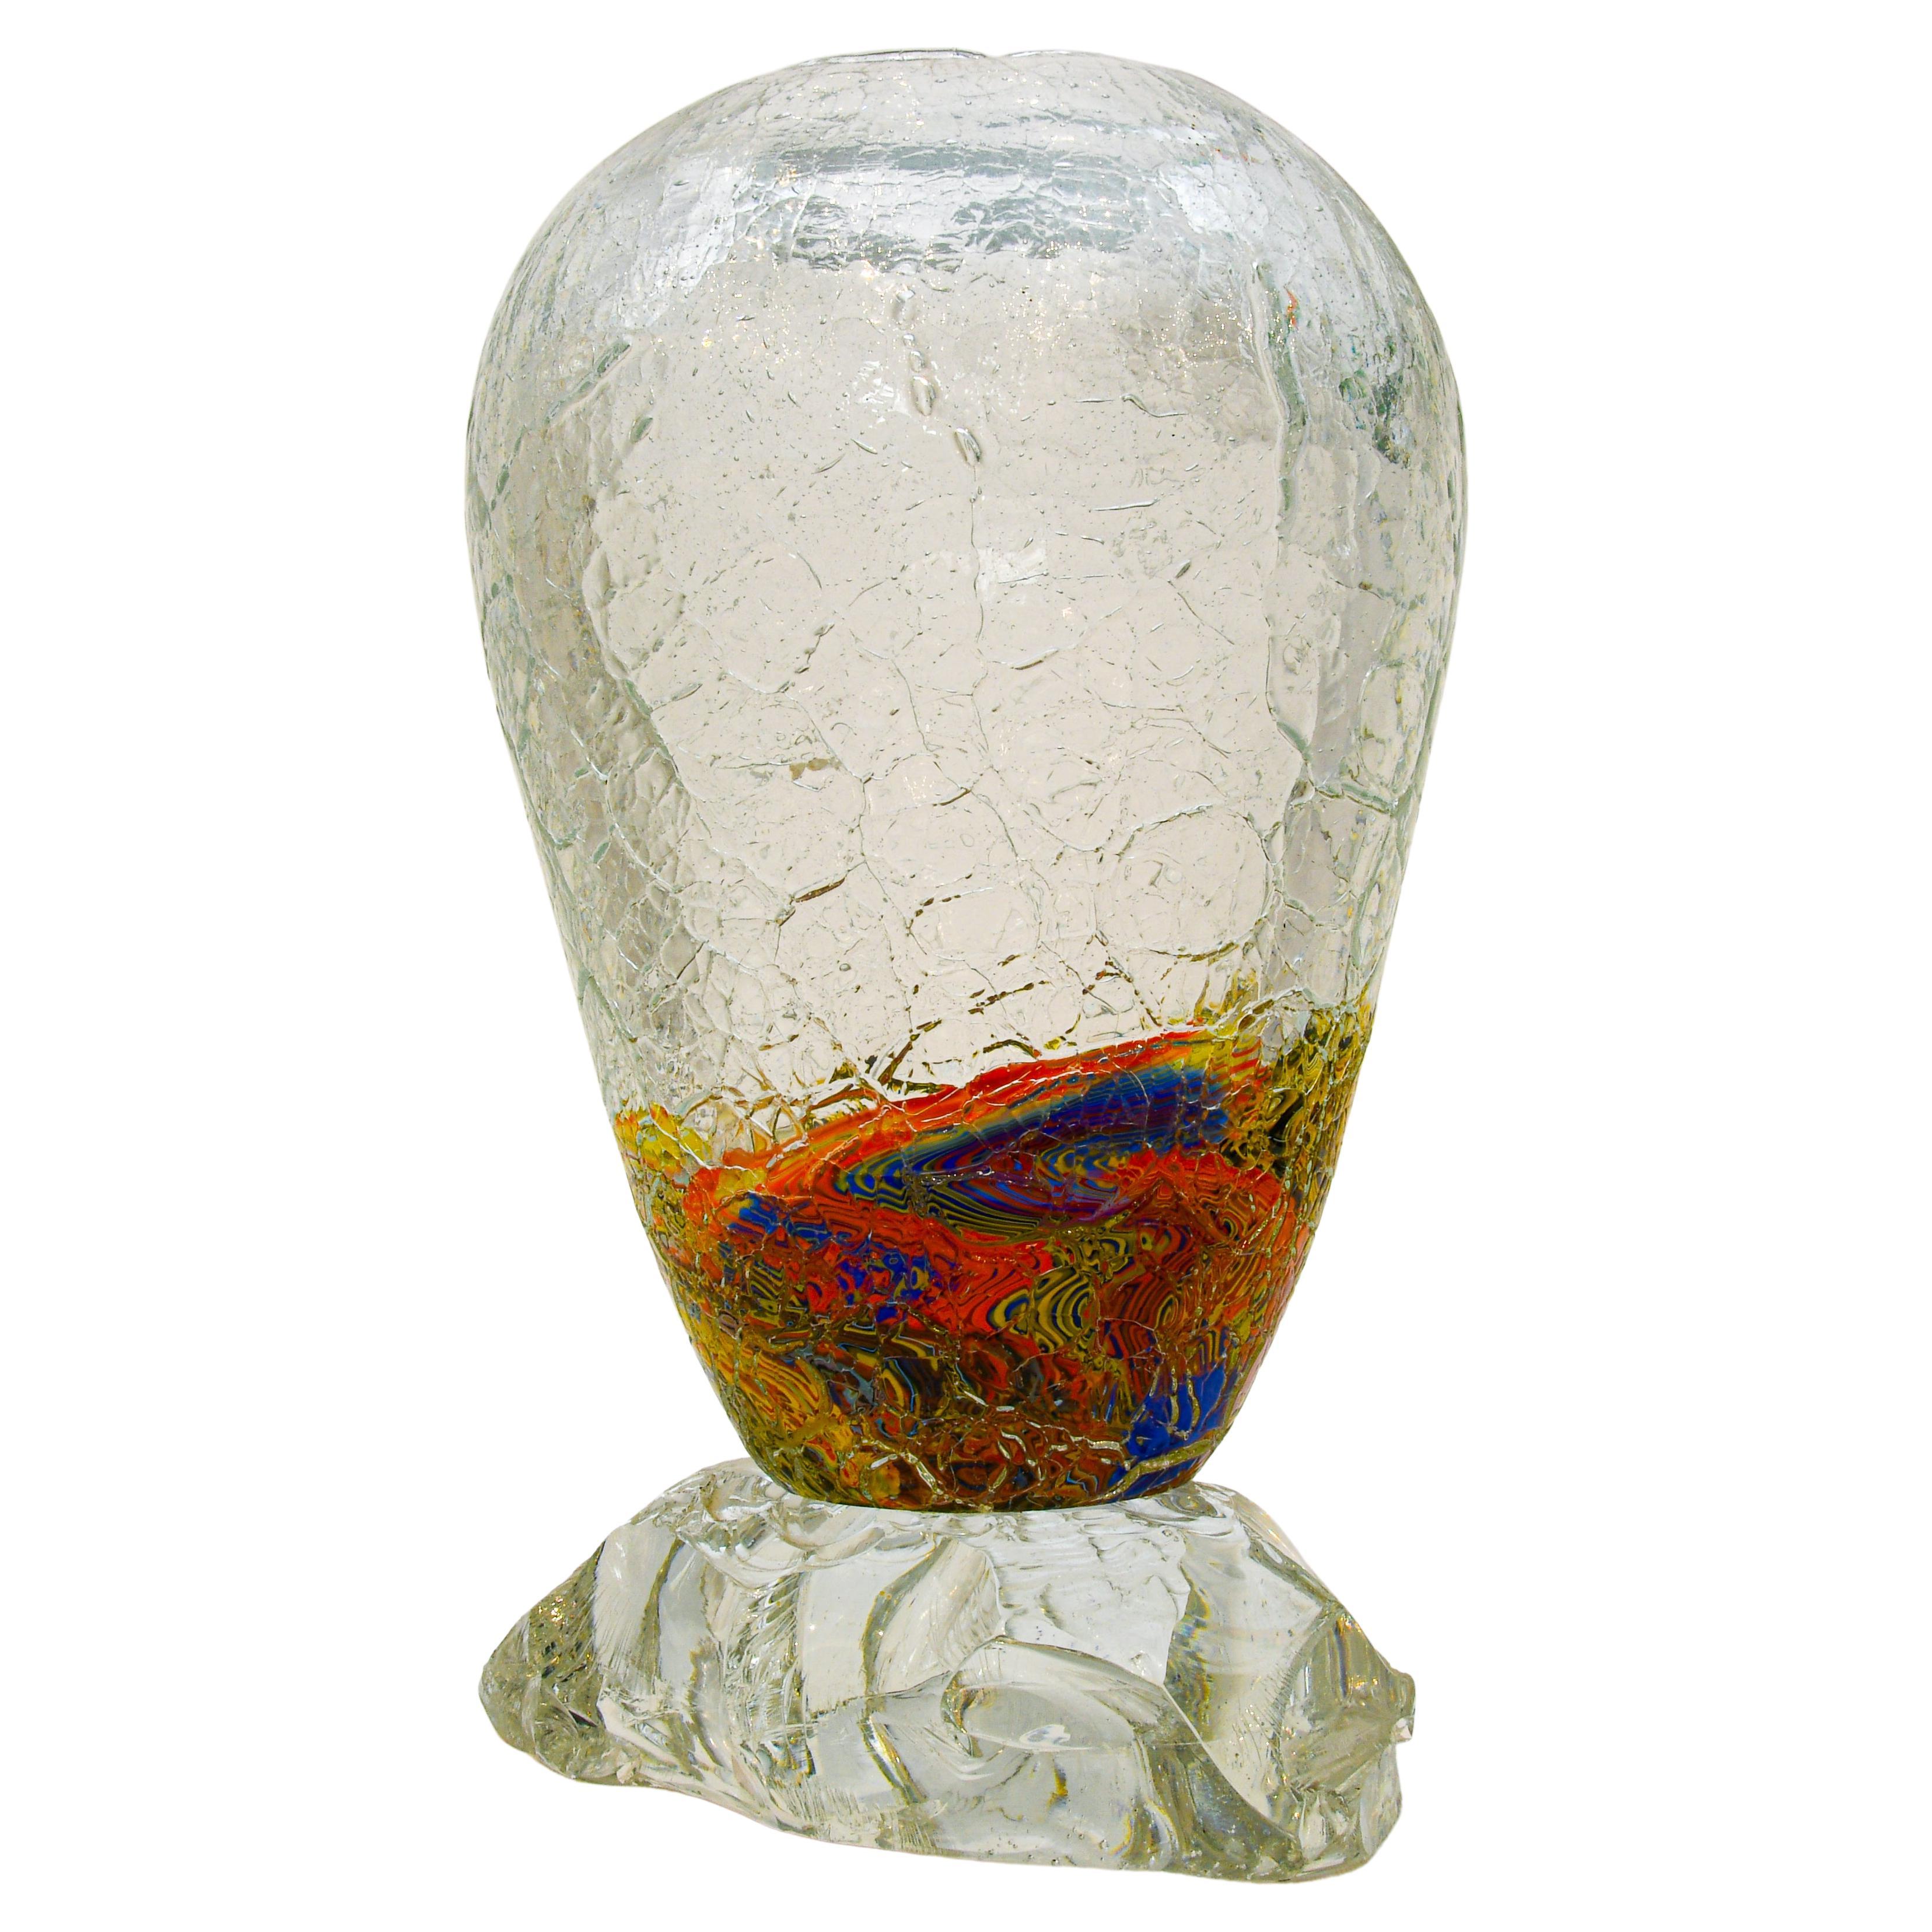 Ce grand vase unique en verre de Murano a été fabriqué selon la technique du 